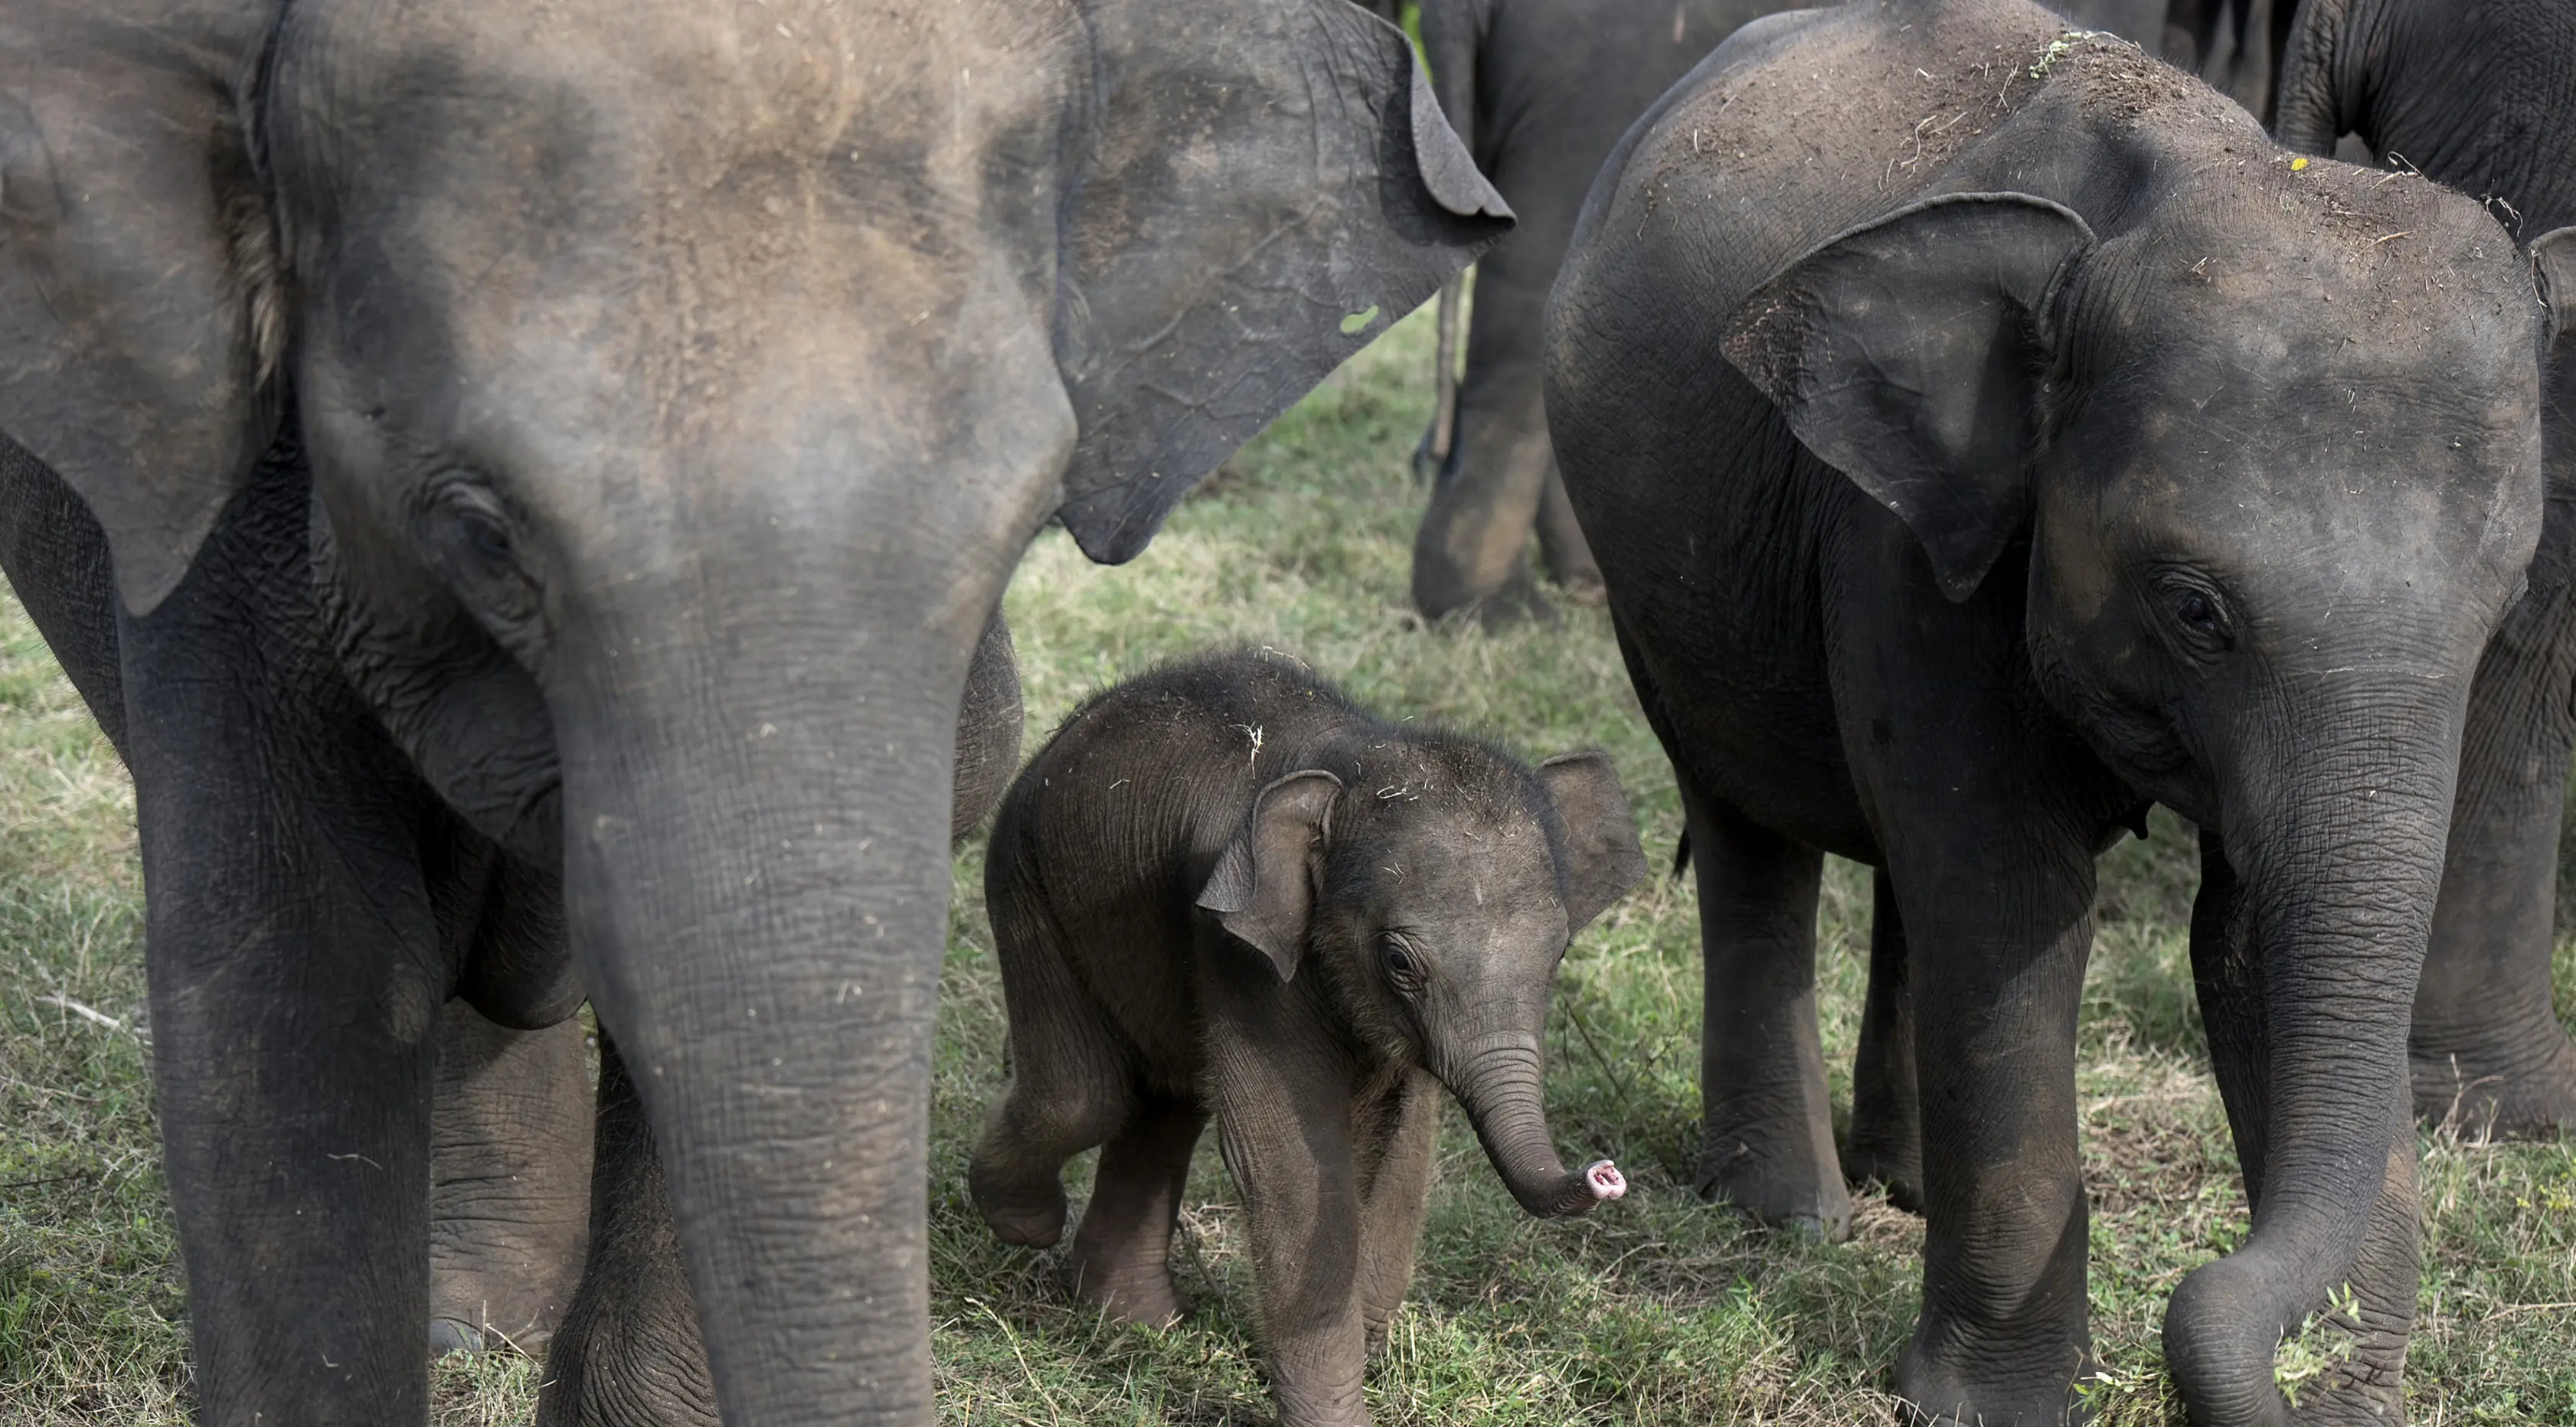 Seekor anak gajah terlihat di Taman Nasional Minneriya di Sri Lanka tengah utara (17/5). Taman ini merupakan tempat wisata yang populer untuk melihat gajah liar Asia berkumpul di lahan terbuka. (AFP Photo/Alex Ogle)